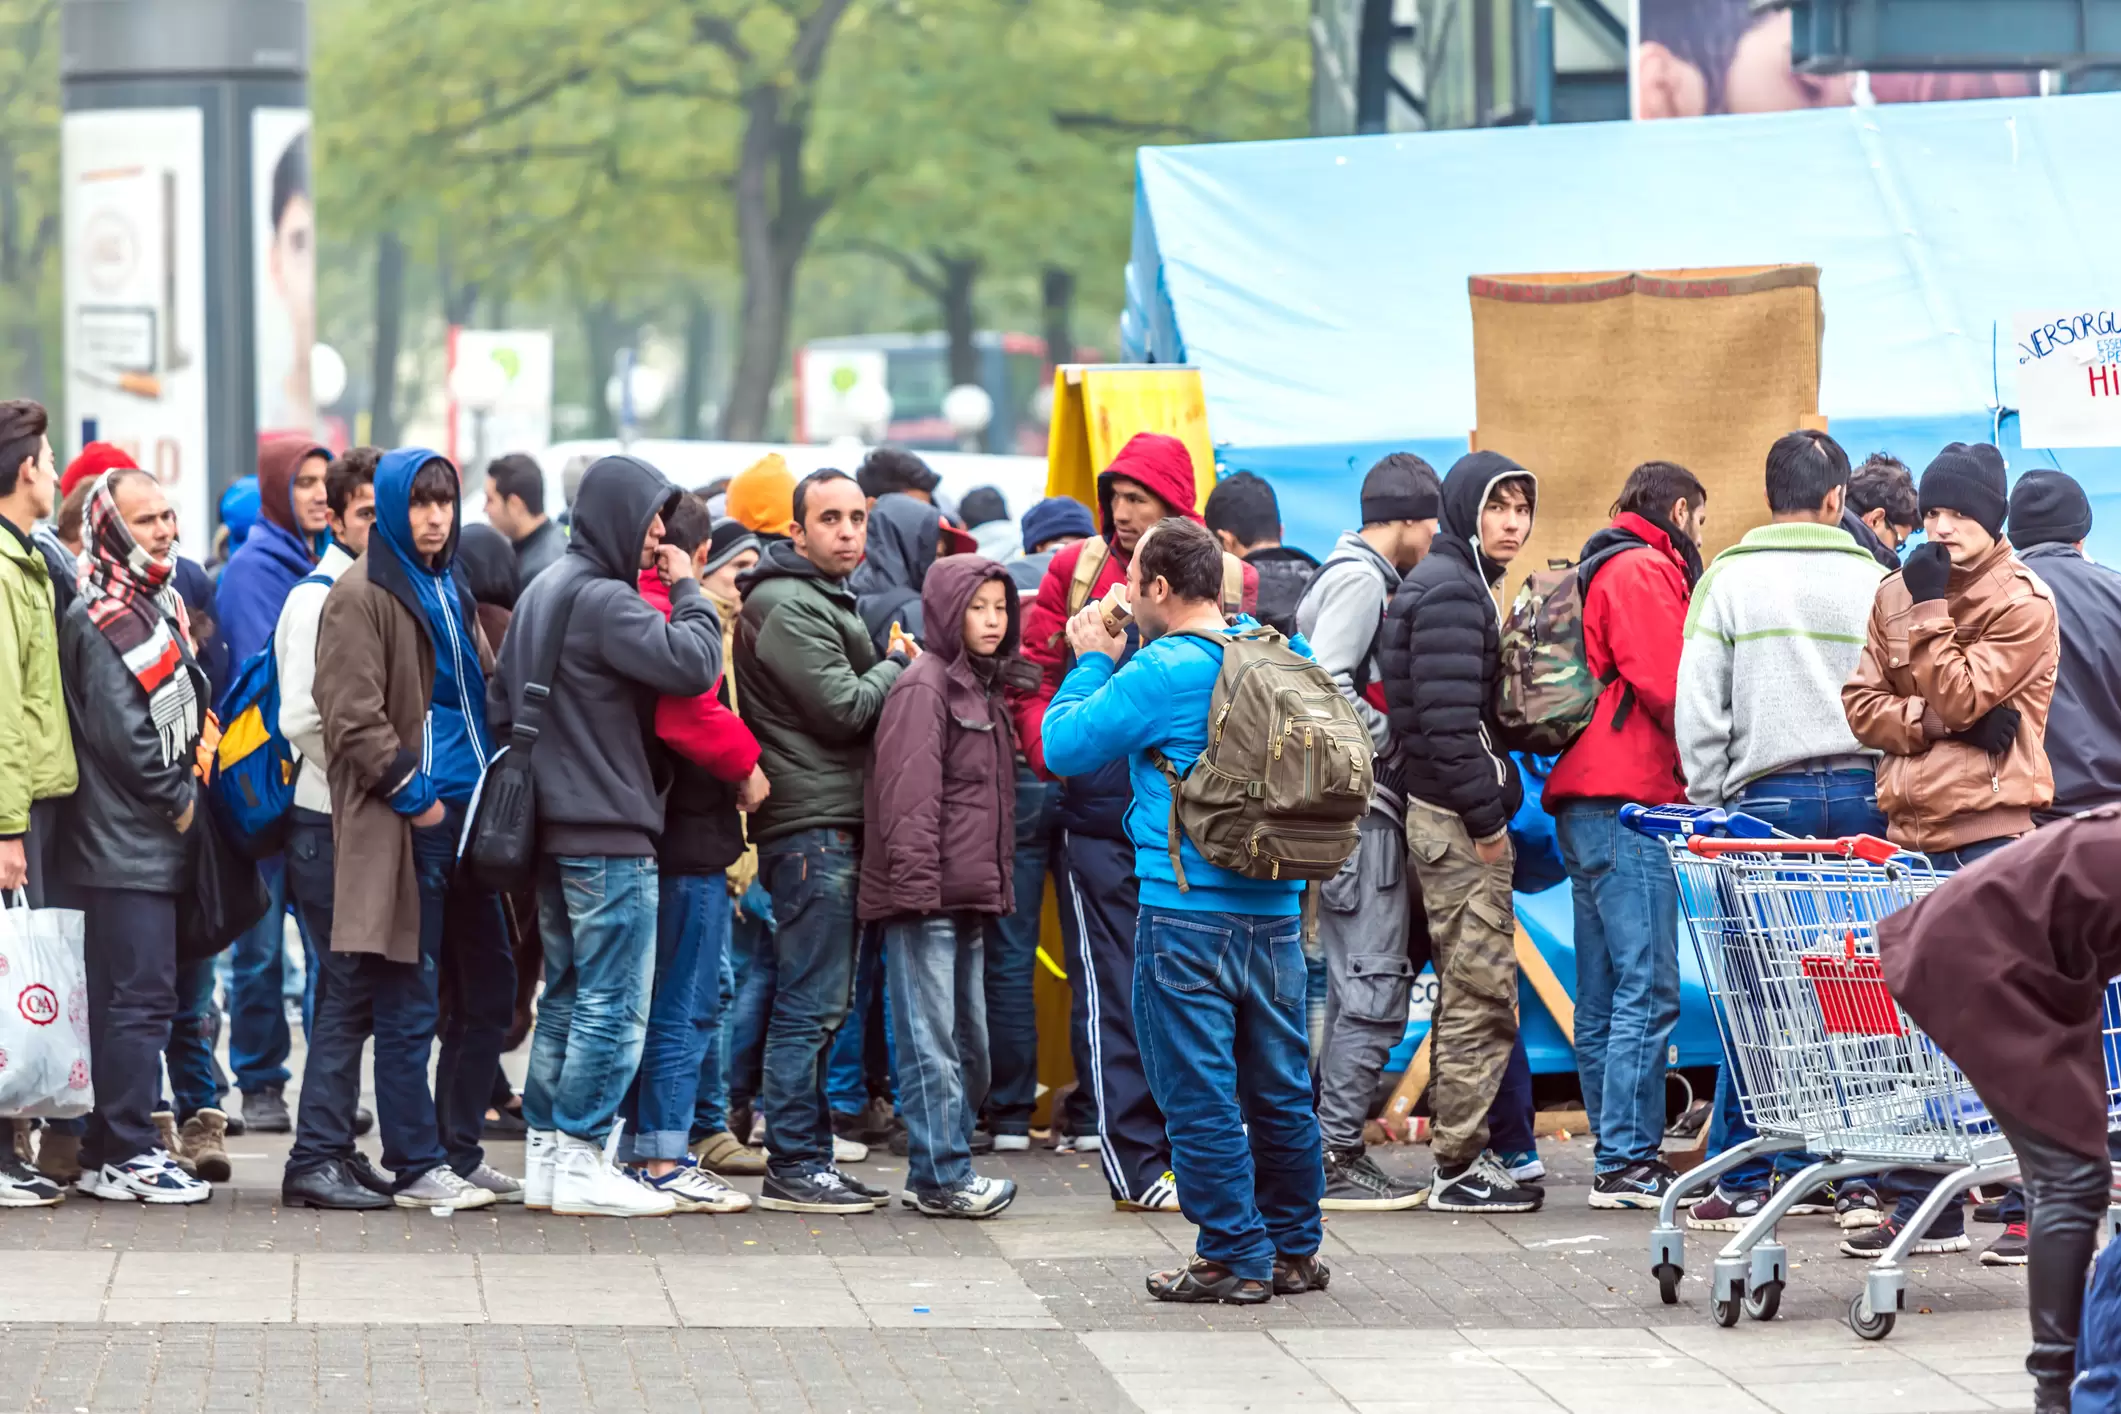 Österreich verzeichnet nach vielen Jahren wieder einen enormen Zustrom an illegalen Migranten. Die Rekordzahl von 2015 wurde bereits vor ein paar Wochen durchbrochen. 2022 wurden über 100.000 Aufgriffe registriert. Nun bekommt die Öffentlichkeit immer mehr Klarheit, über welche Fluchtrouten die Migranten nach Österreich gelangen. Foto: iStock / querbeet